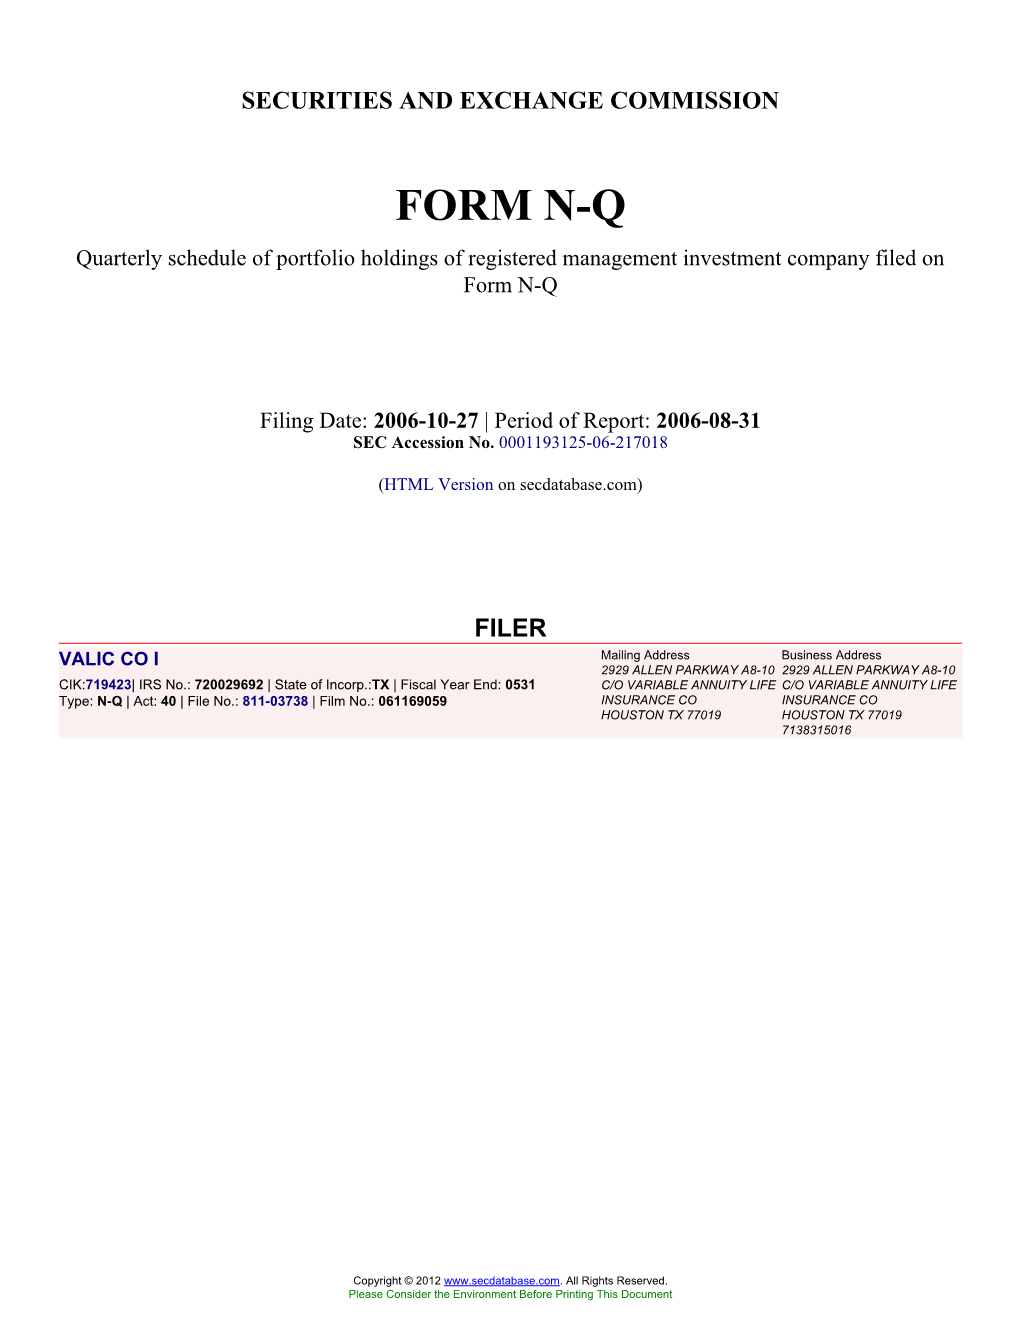 Form: NQ, Filing Date: 10/27/2006